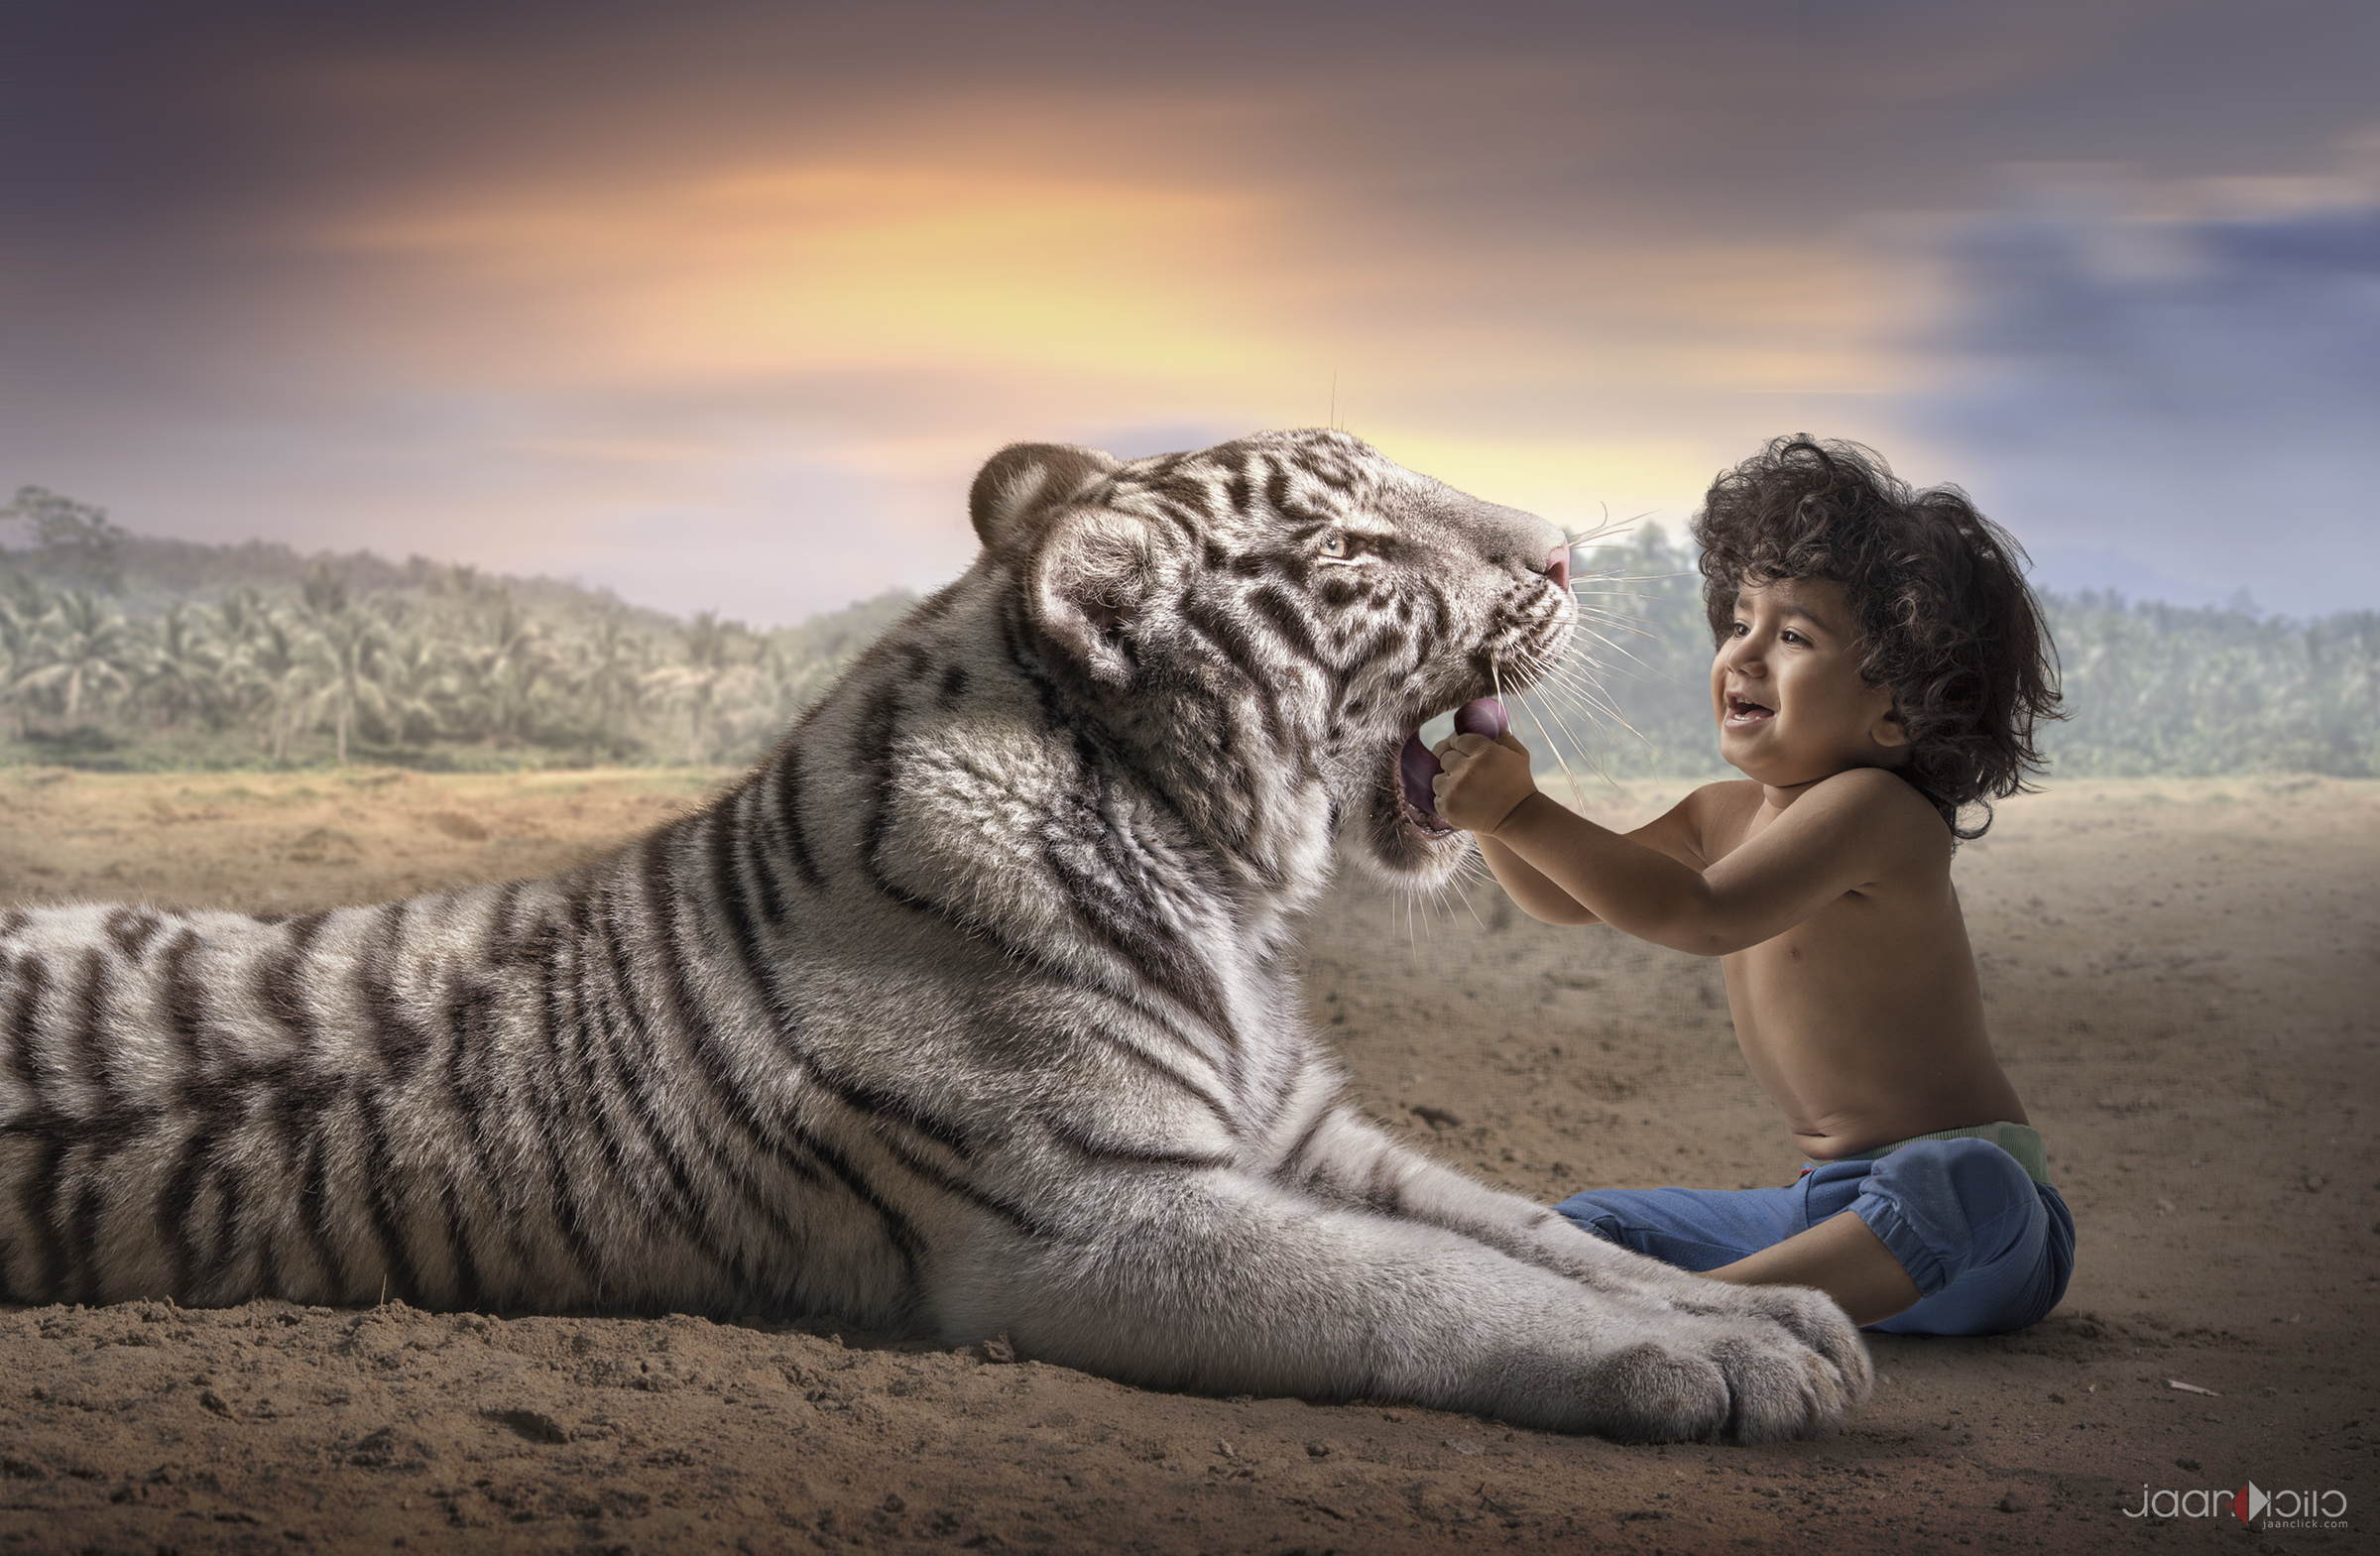 ziyad and tiger.jpg